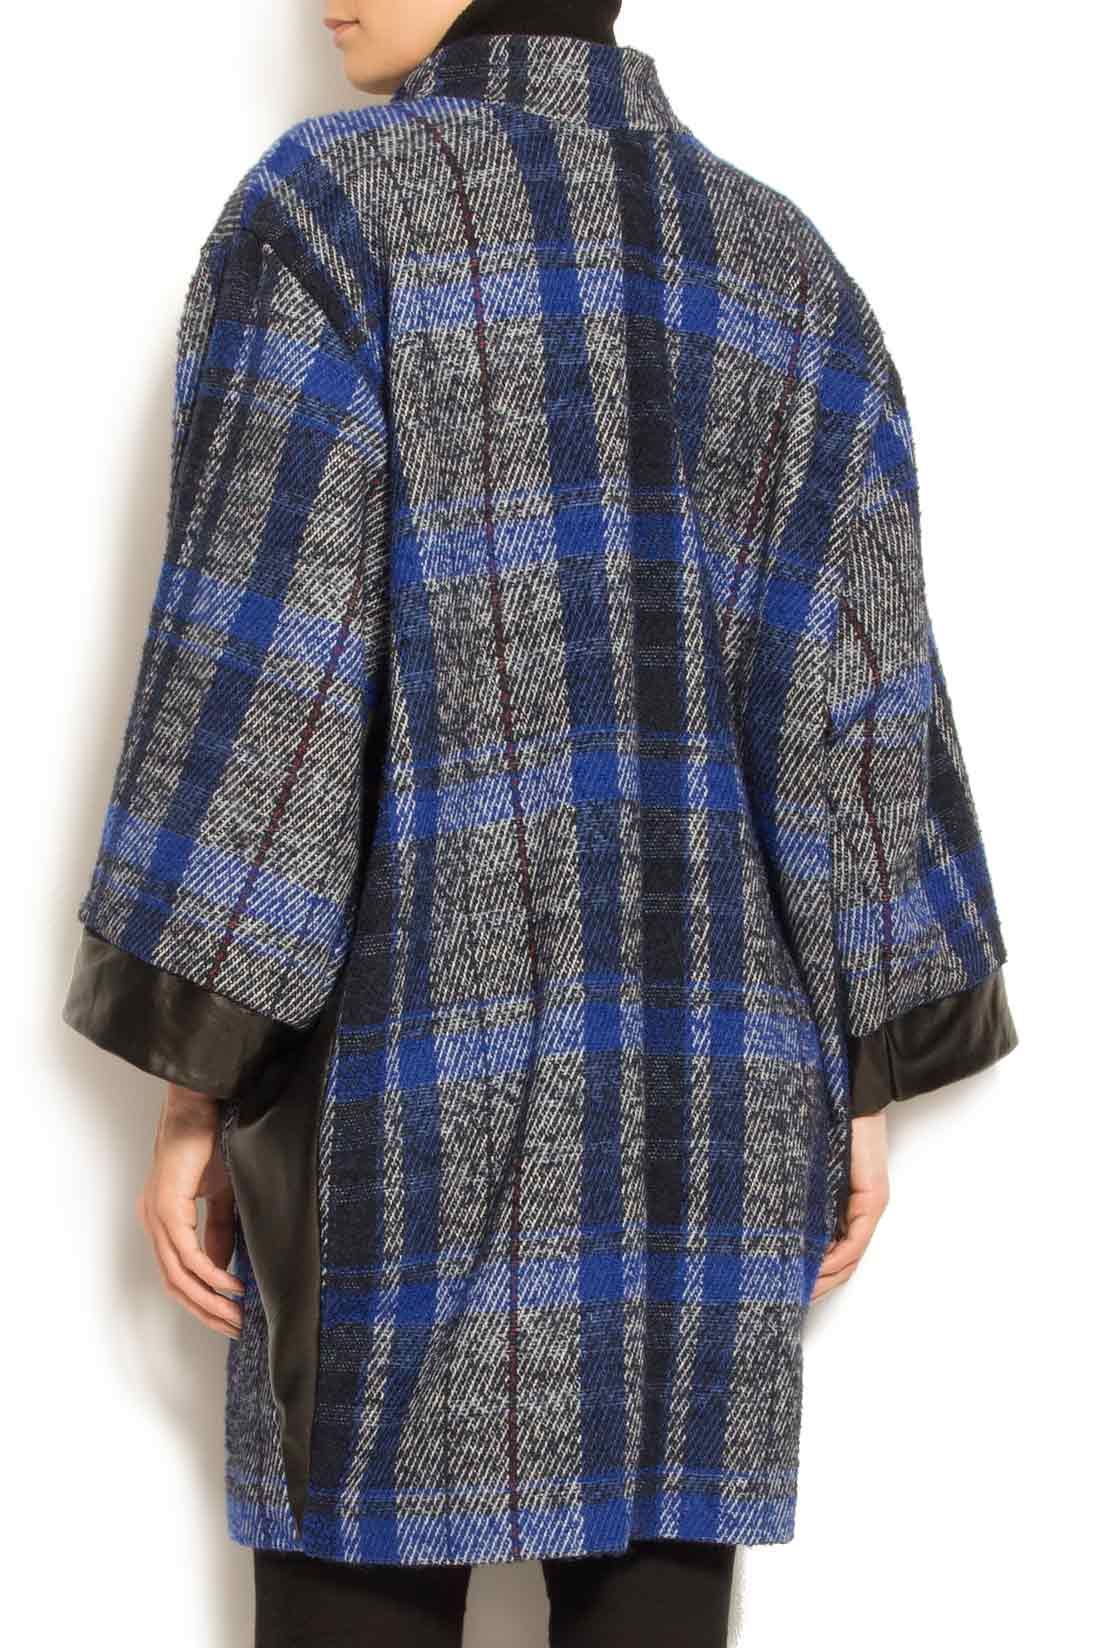 Palton din lana cu insertii din piele Elena Perseil imagine 3